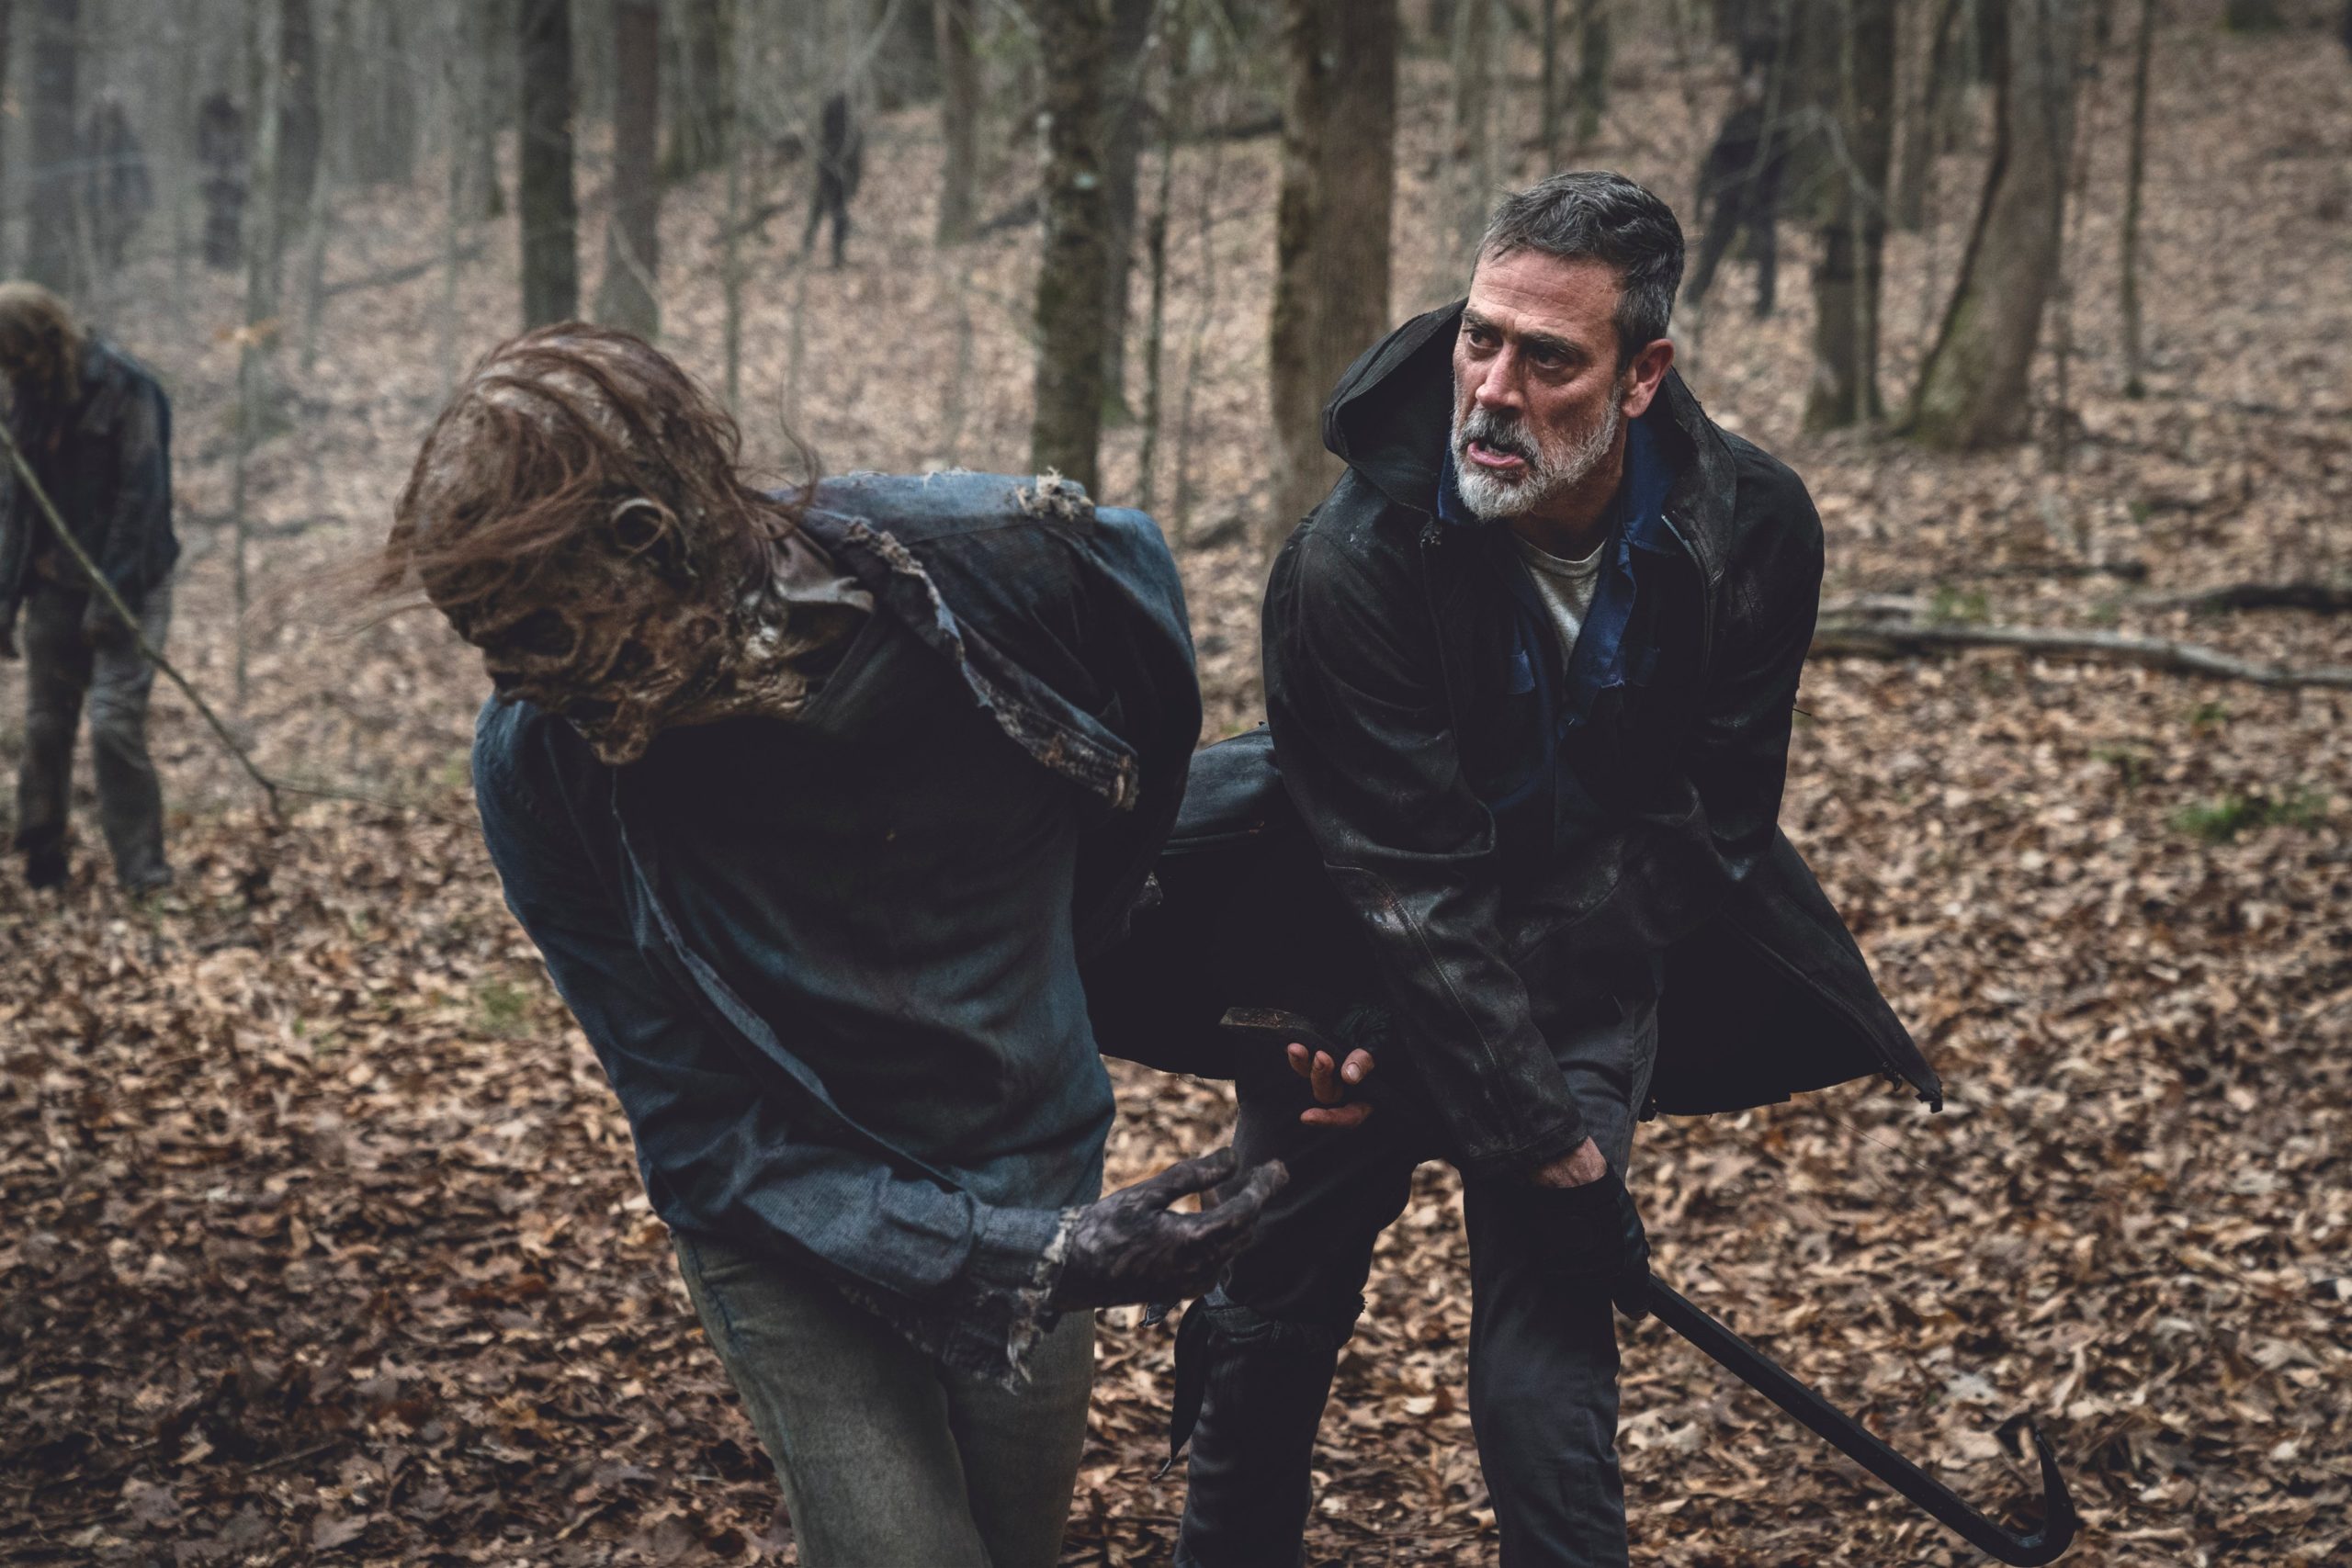 اولین تصاویر از فصل یازدهم و پایانی سریال The Walking Dead منتشر شده است که نشان از فصلی اکشن و پر از خونریزی دارد.